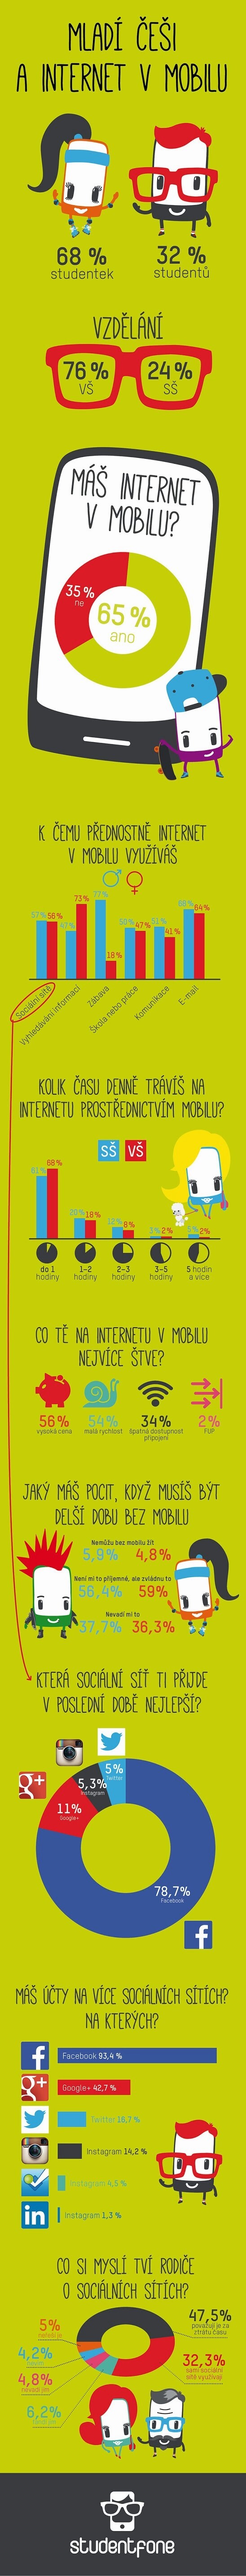 Mladí Češi a internet v mobilu